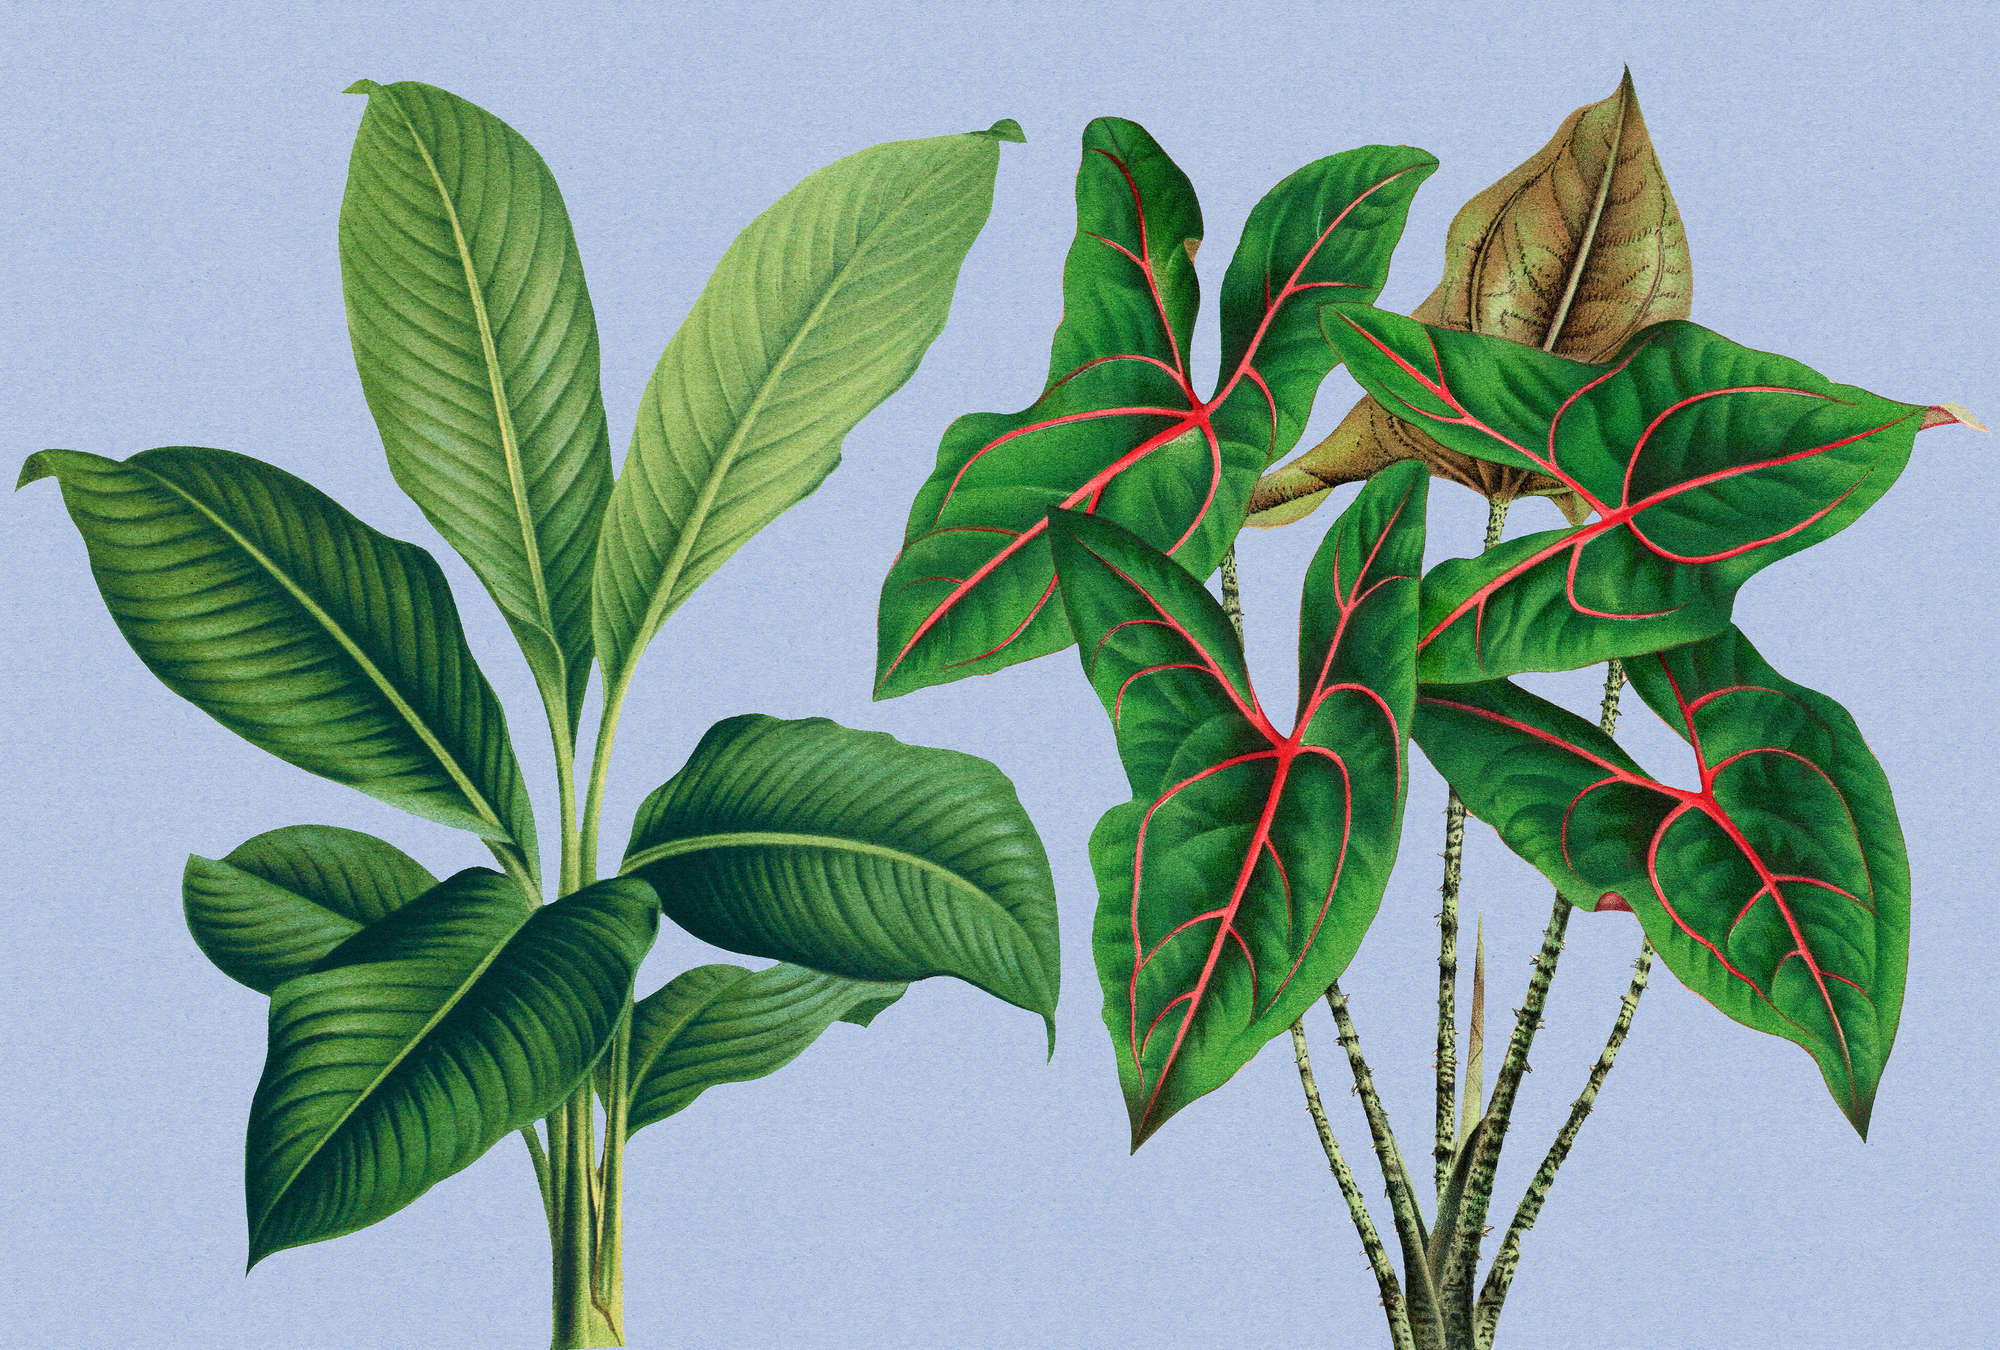             Leaf Garden 1 – Blätter Fototapete Blau mit tropischen Pflanzen
        